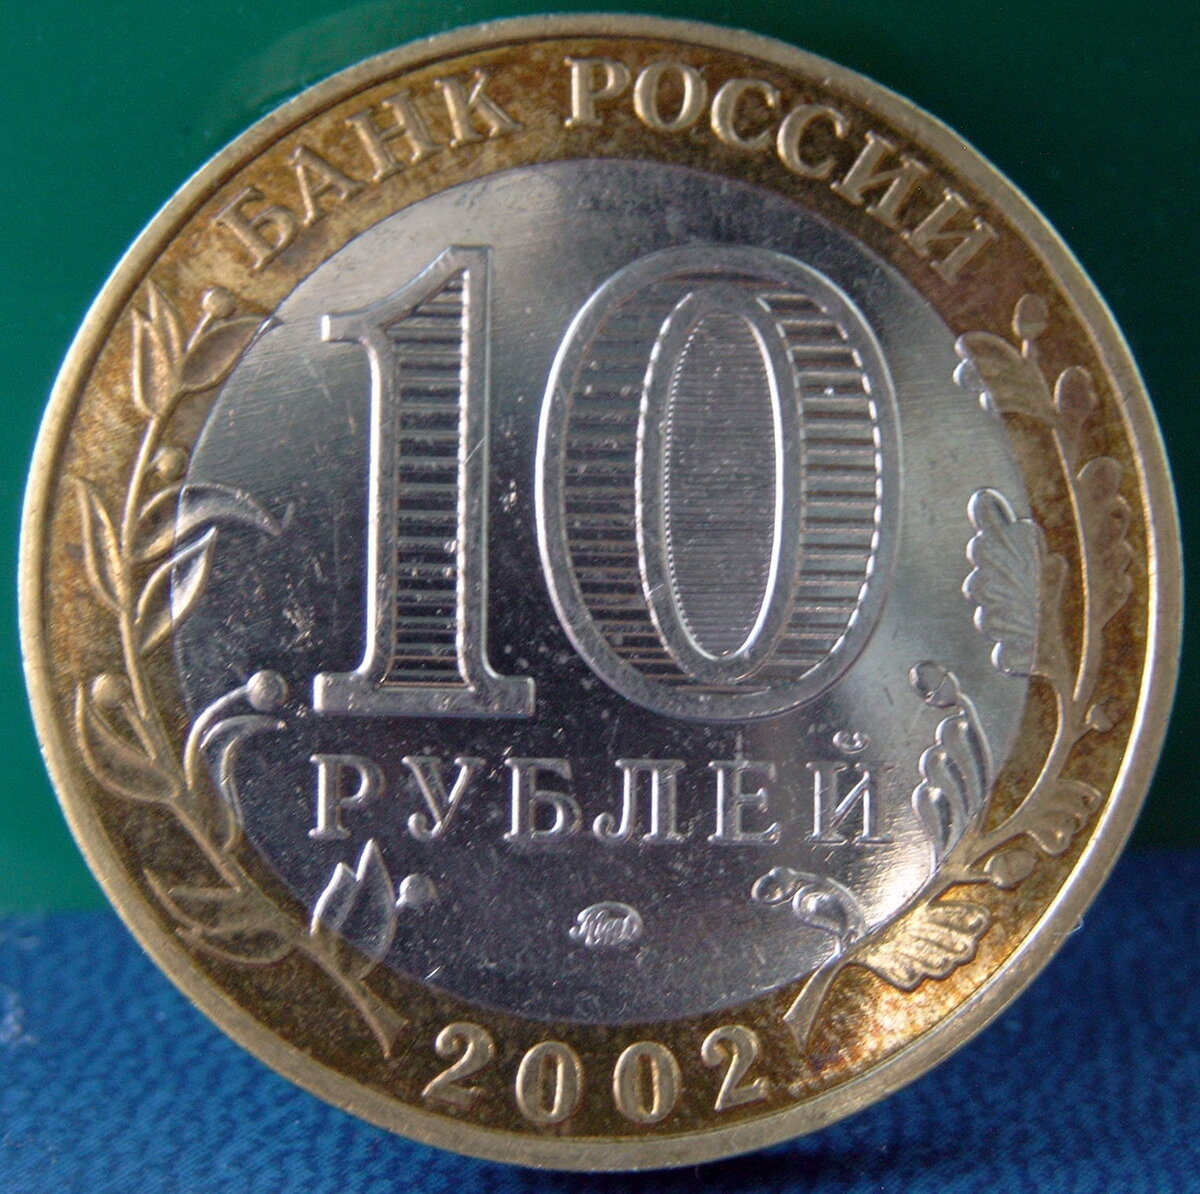 Дорогие юбилейные 10 рублей. Монета 10 рублей. Монеты номиналом 10 рублей. Монета 10 рублей обычная. 10 Рублей юбилейные.